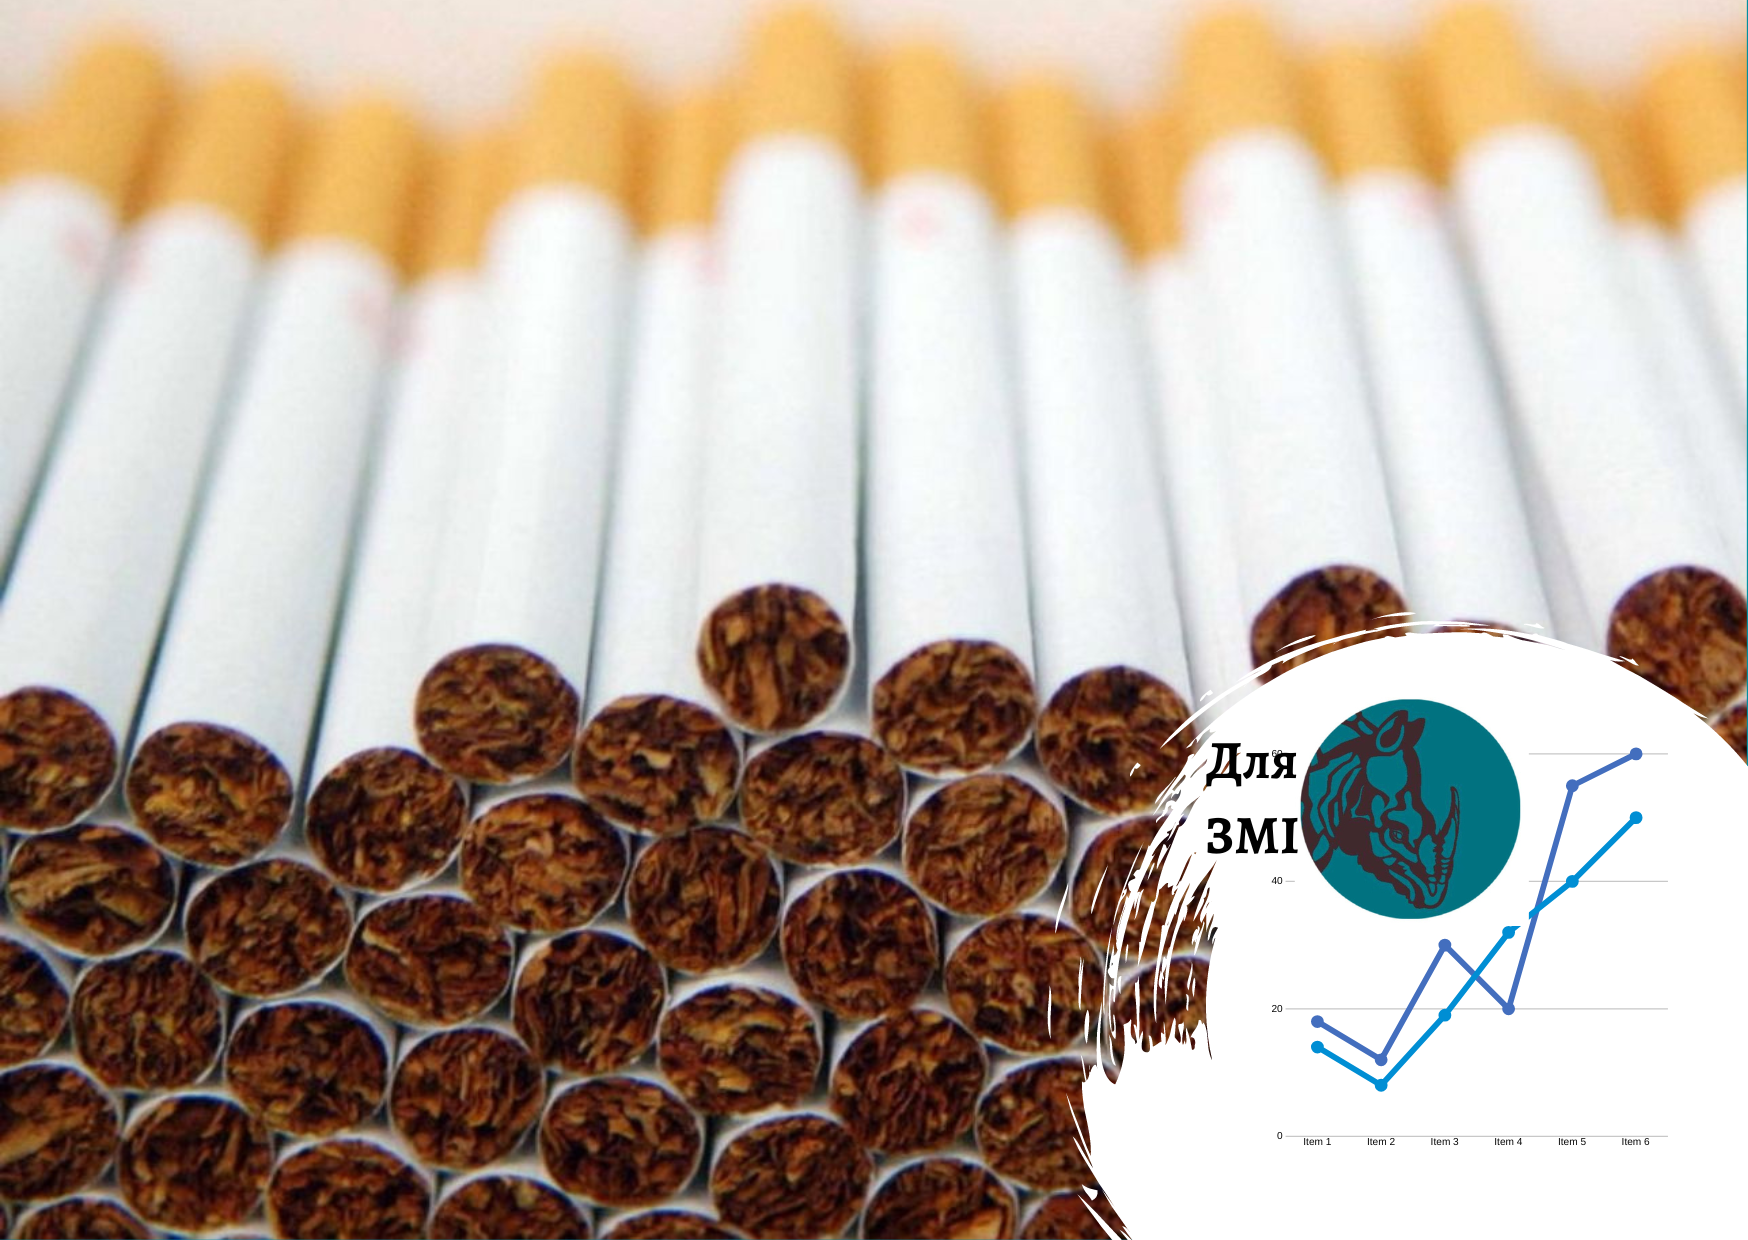 Теневой табачный рынок существенно вырос – данные по рынку от Pro-Consulting. FORBES